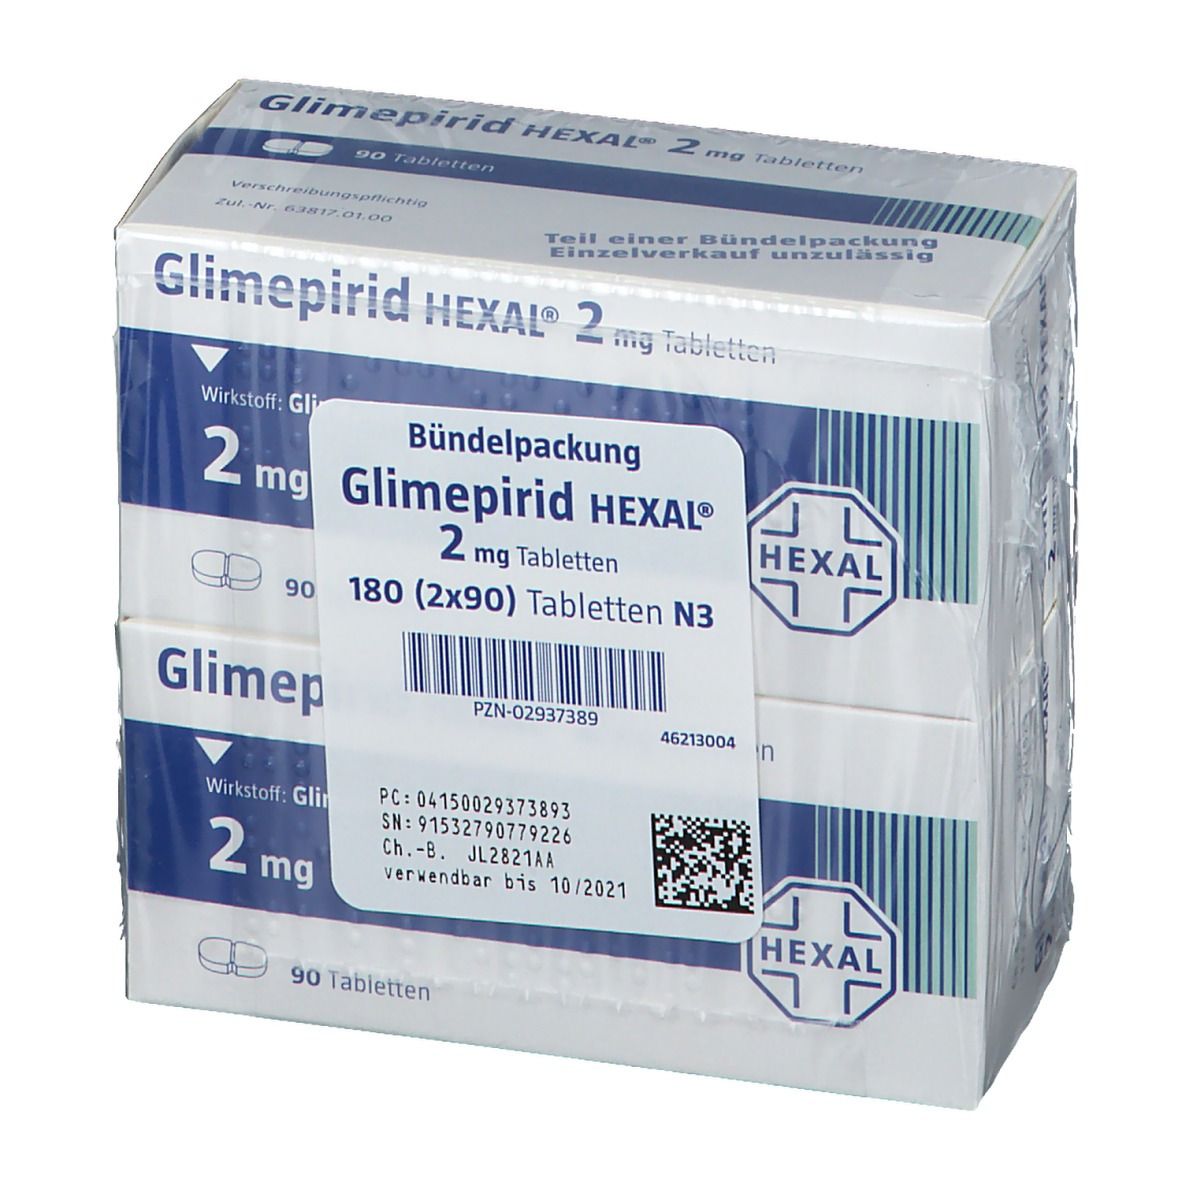 Glimepirid HEXAL® 2 mg